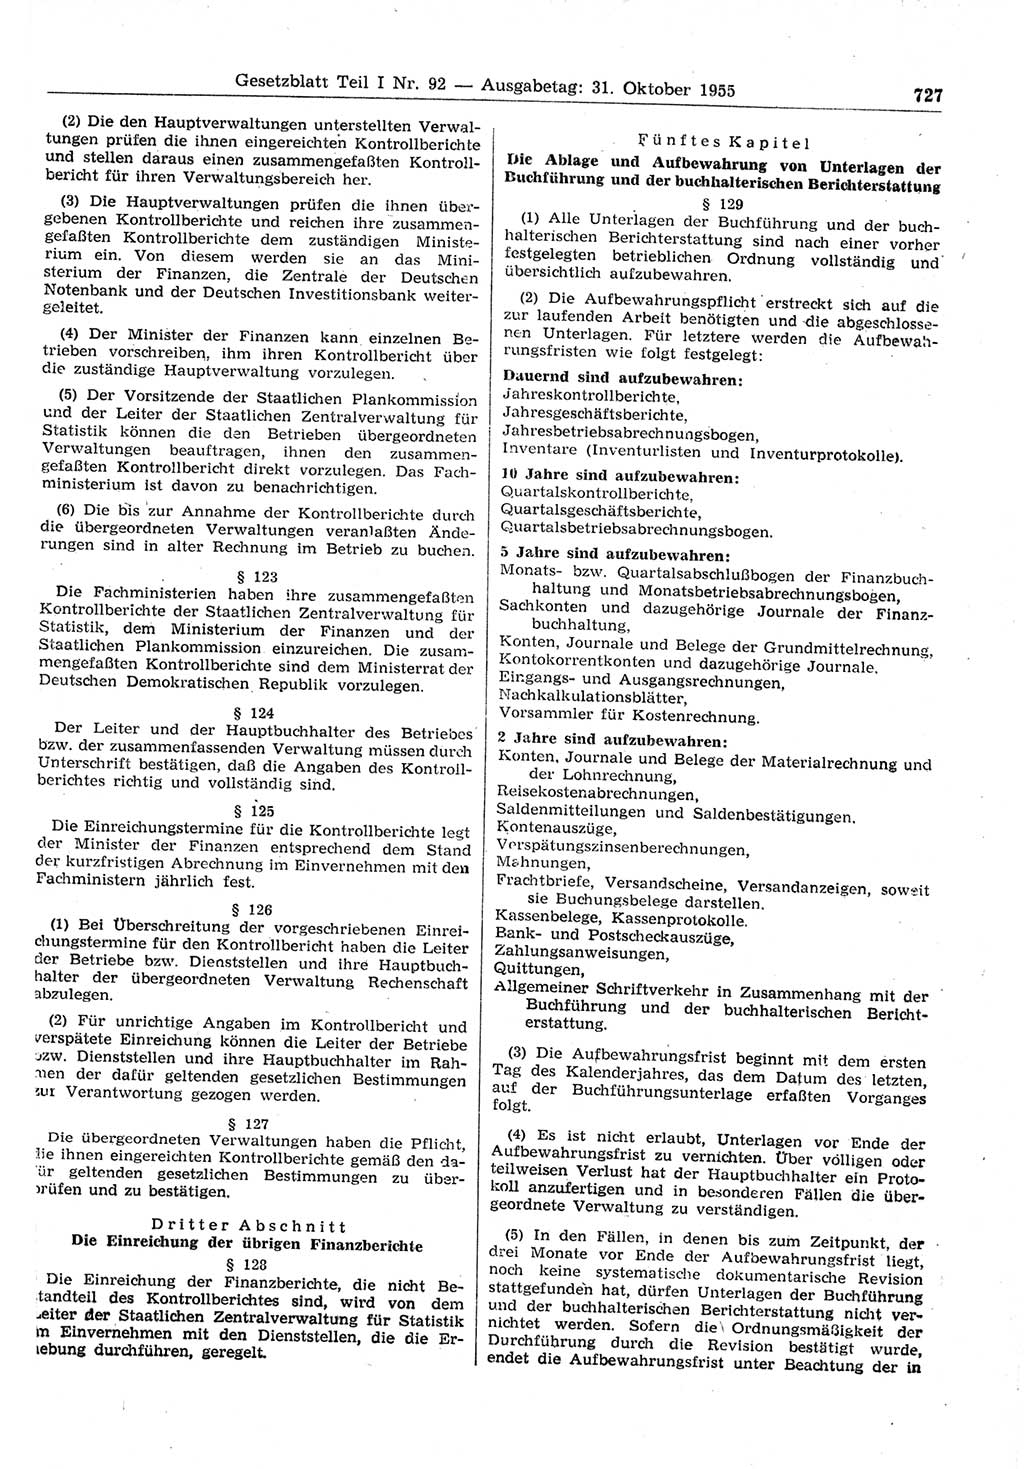 Gesetzblatt (GBl.) der Deutschen Demokratischen Republik (DDR) Teil Ⅰ 1955, Seite 727 (GBl. DDR Ⅰ 1955, S. 727)